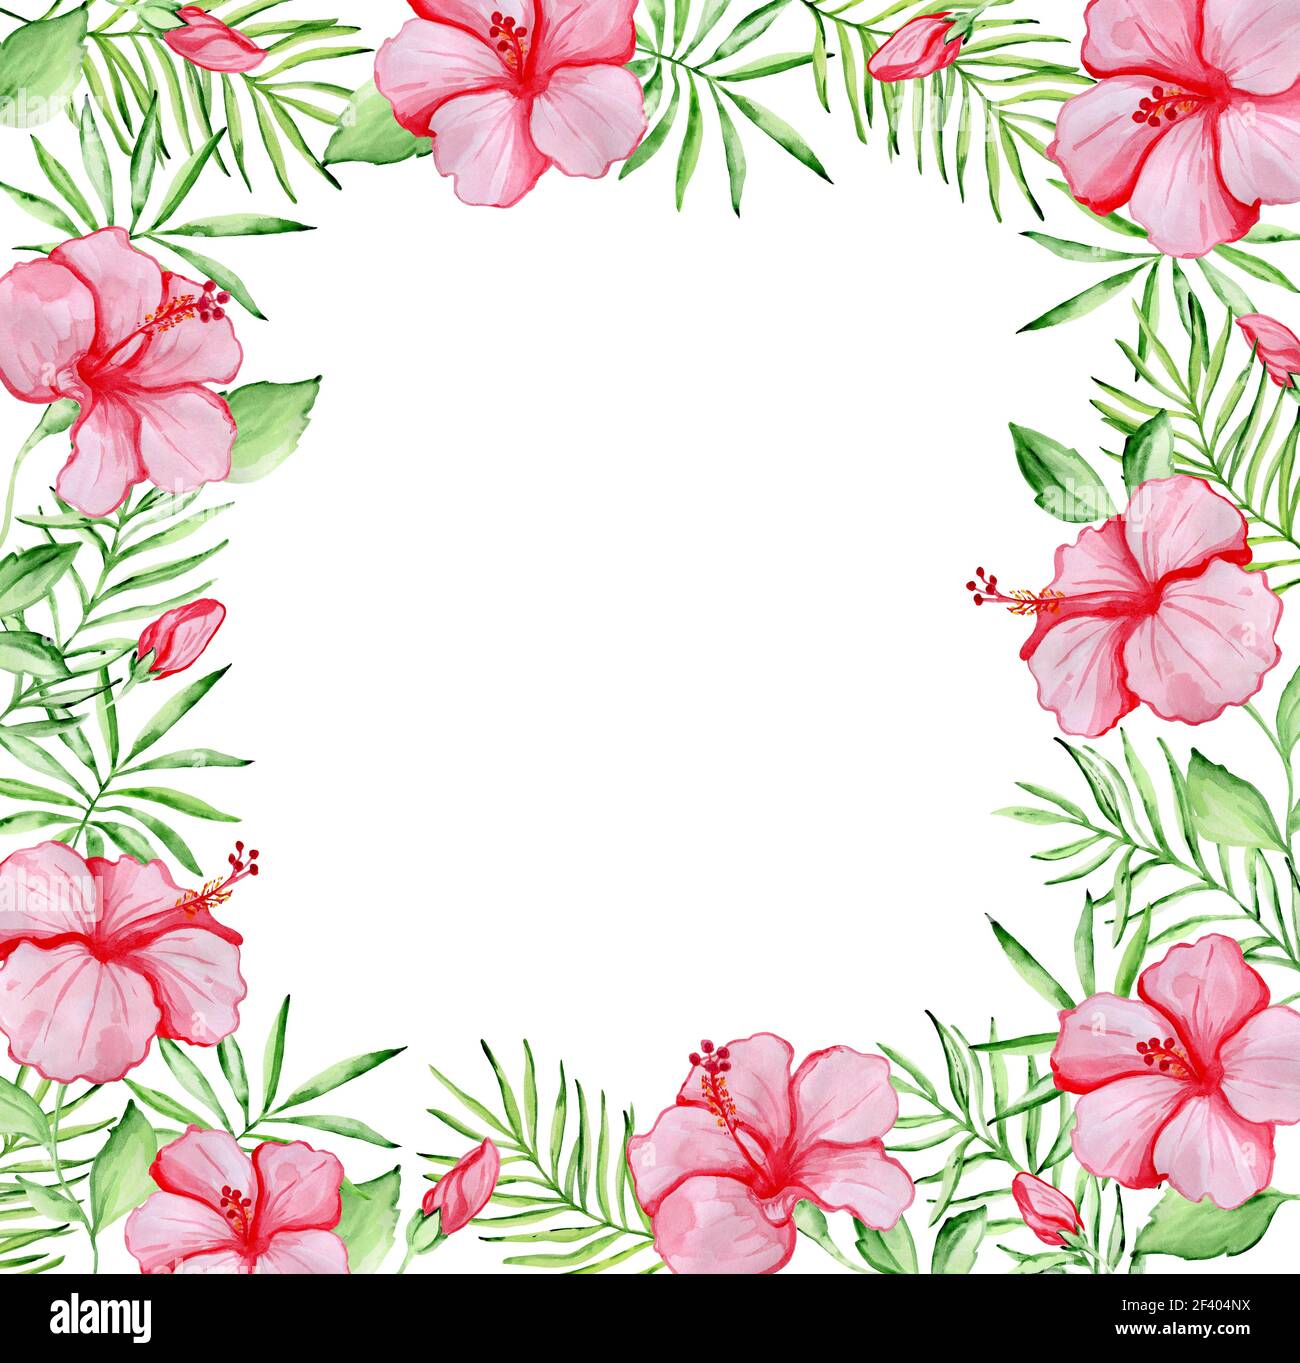 Cadre floral tropical aquarelle avec fleurs d'hibiscus rouges et feuilles de palmier vertes sur fond blanc. Cadre fleuri avec fleurs d'hibiscus rouges Banque D'Images